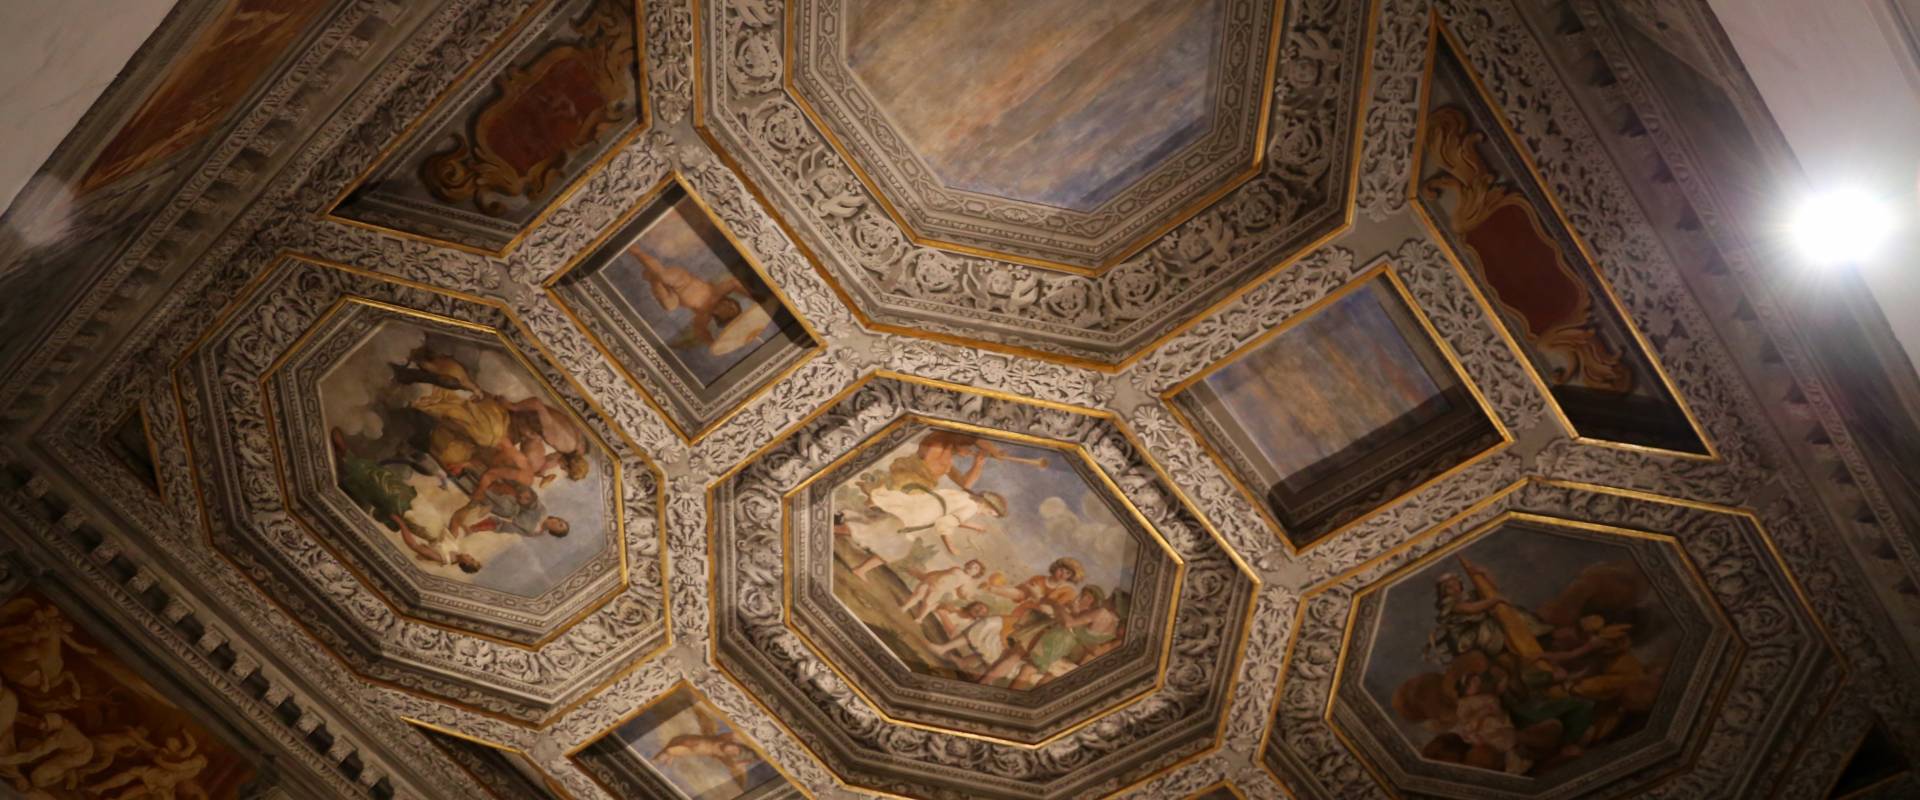 Sisto badalocchio e altri, soffitto della sala di giove, 1603, 02 photo by Sailko